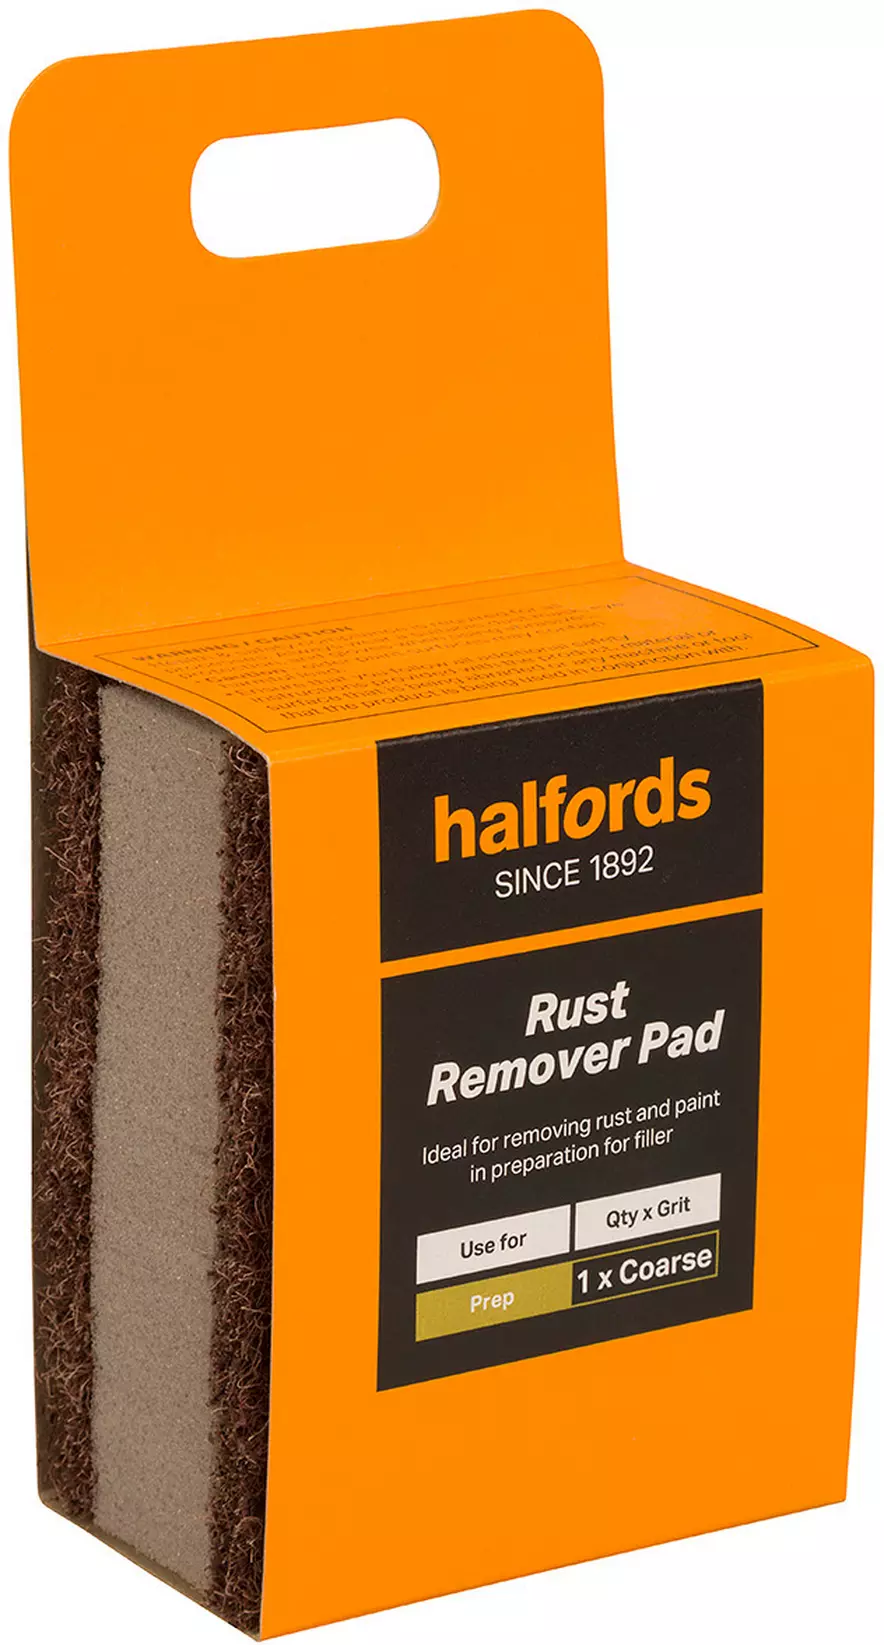 Buy Rust Eraser - UK's Best Online Price